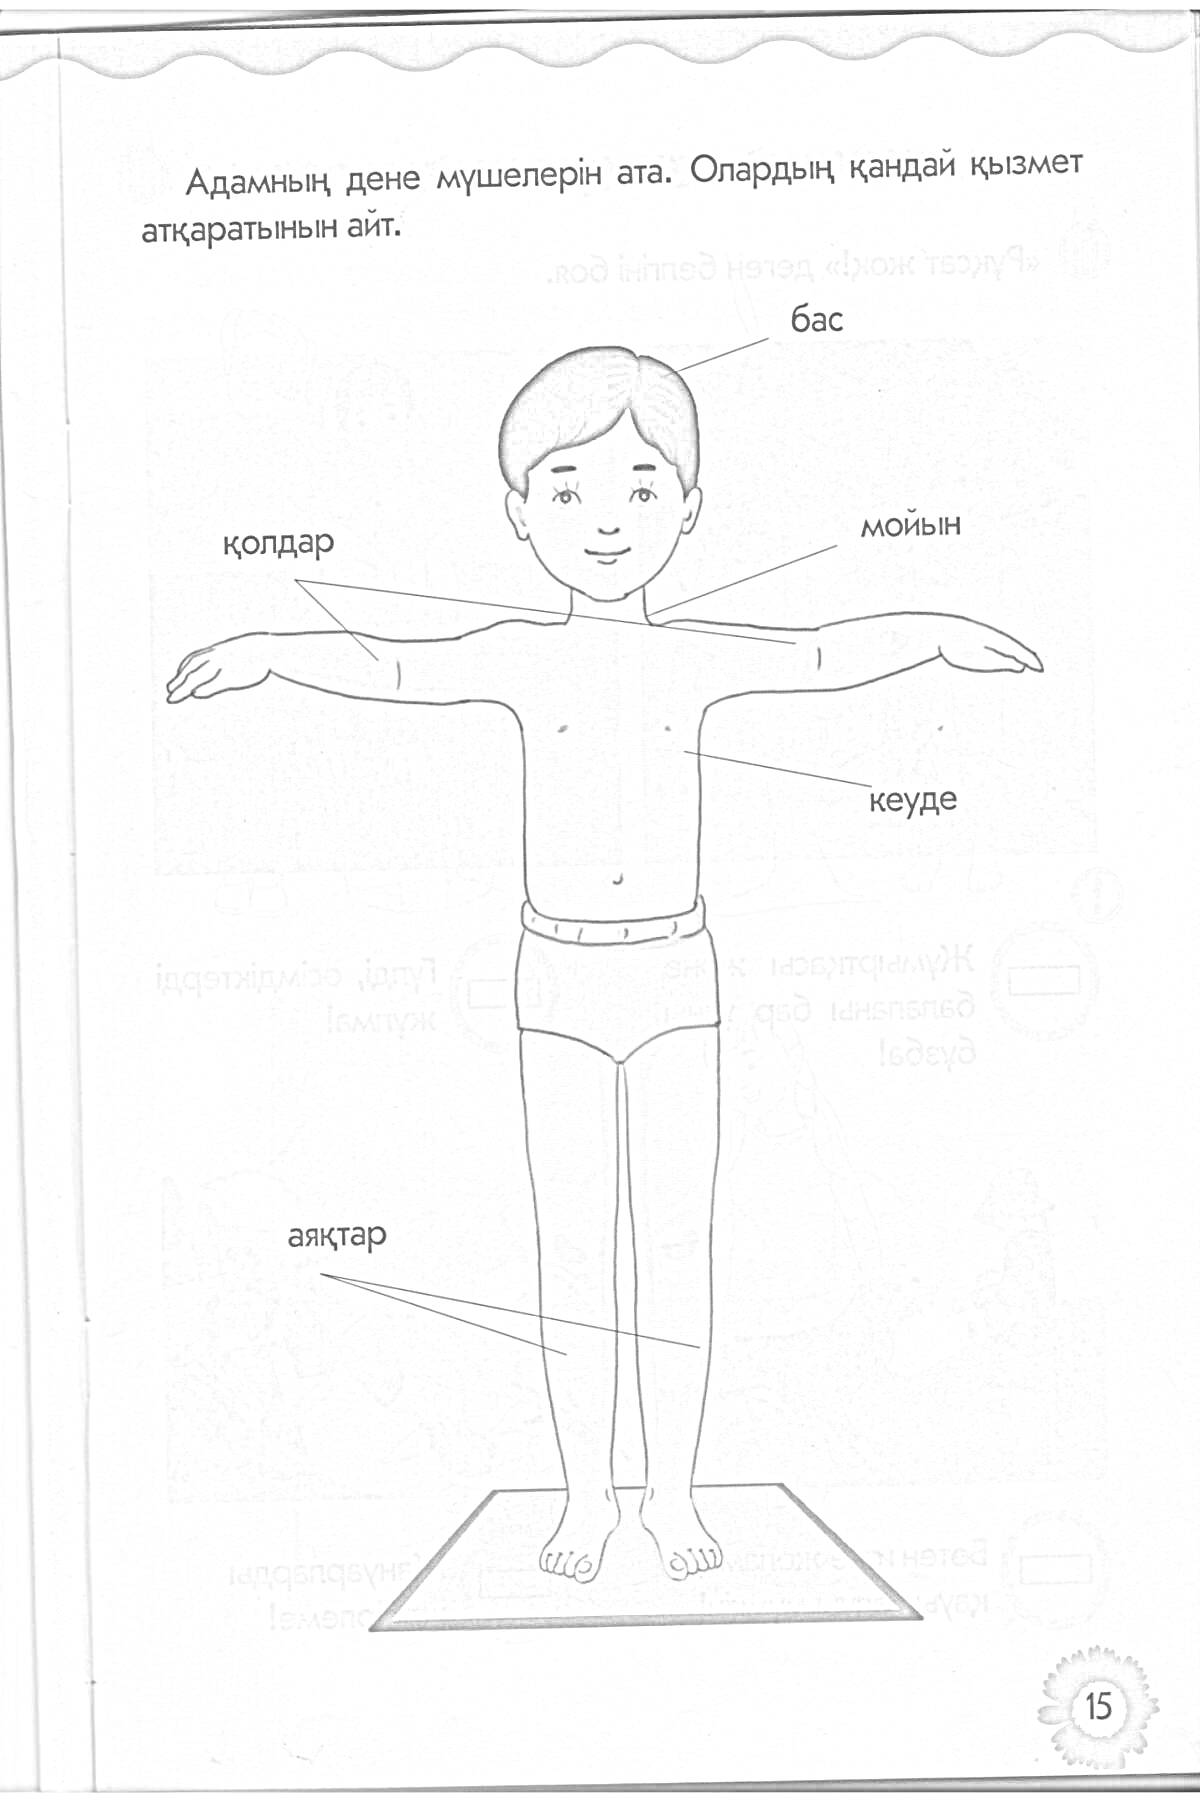 Ребенок с указанием частей тела (бас, мойын, қолдар, кеуде, аяқтар)